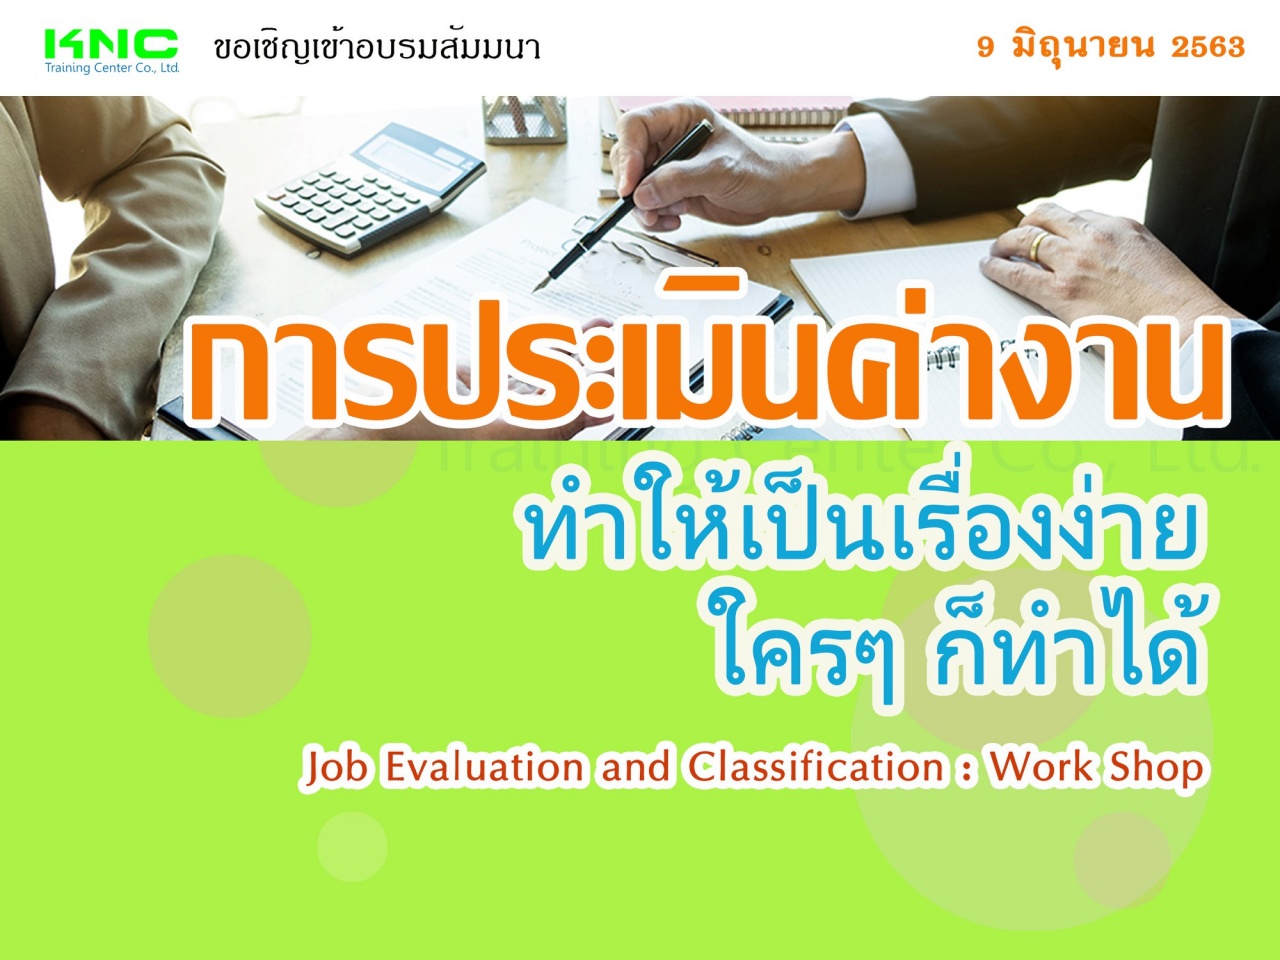 การประเมินค่างาน ทำให้เป็นเรื่องง่ายใครๆ ก็ทำได้ (Job Evaluation and Classification : Work Shop)